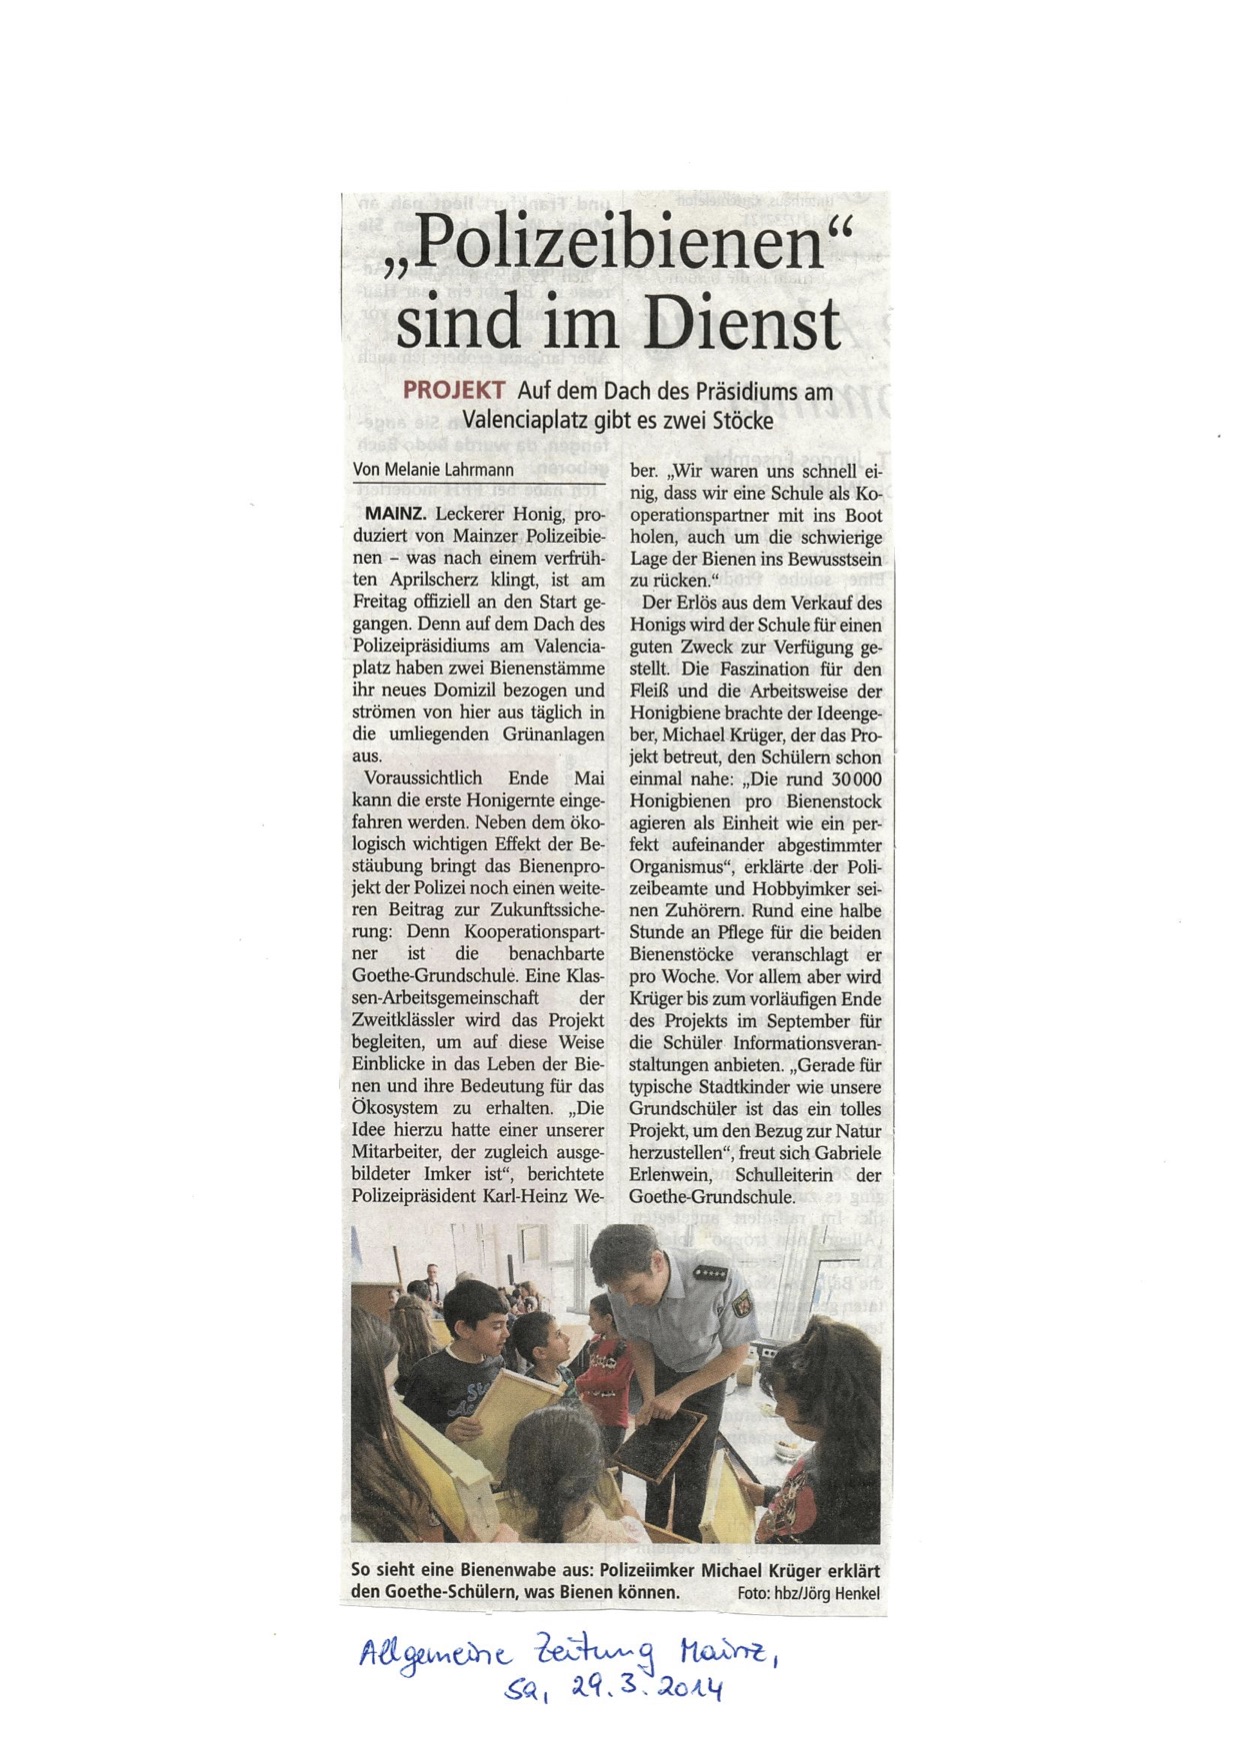 "Polizeibienen sind im Dienst" - Allgemeine Zeitung Mainz vom 29.03.2014